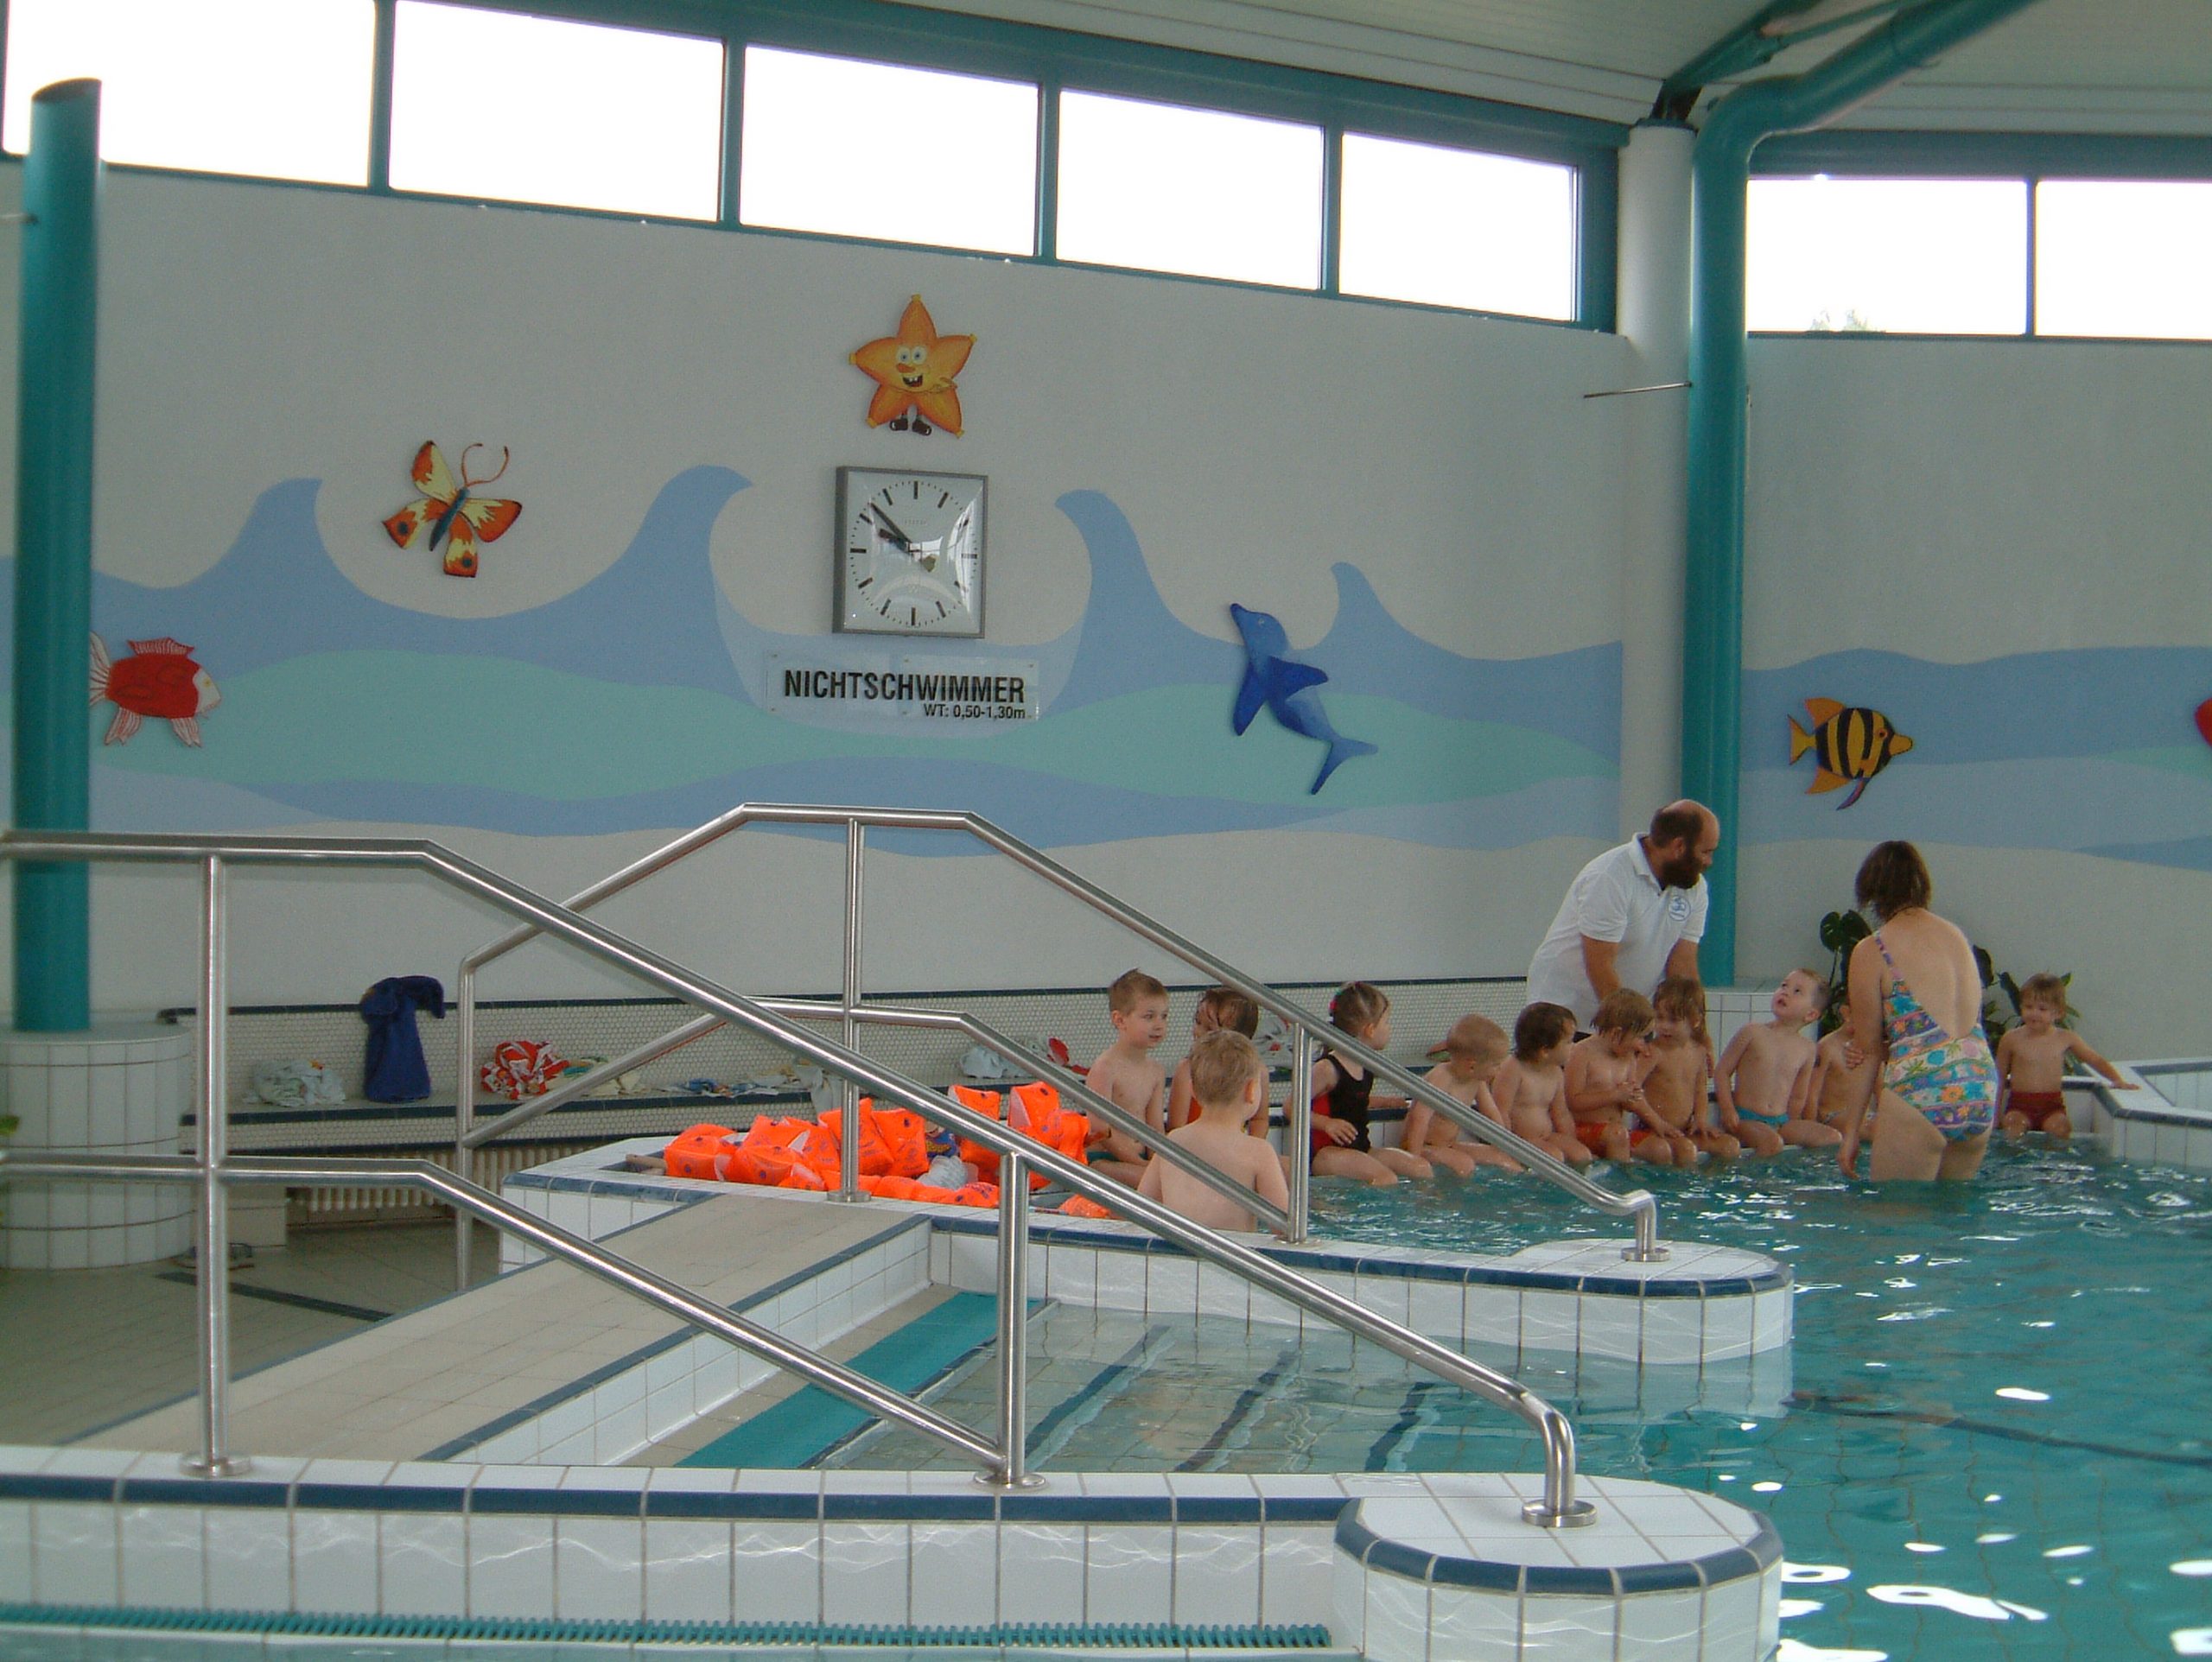 Schwimmhalle Strausbad 2004, Blick zum Nichtschwimmerbereich